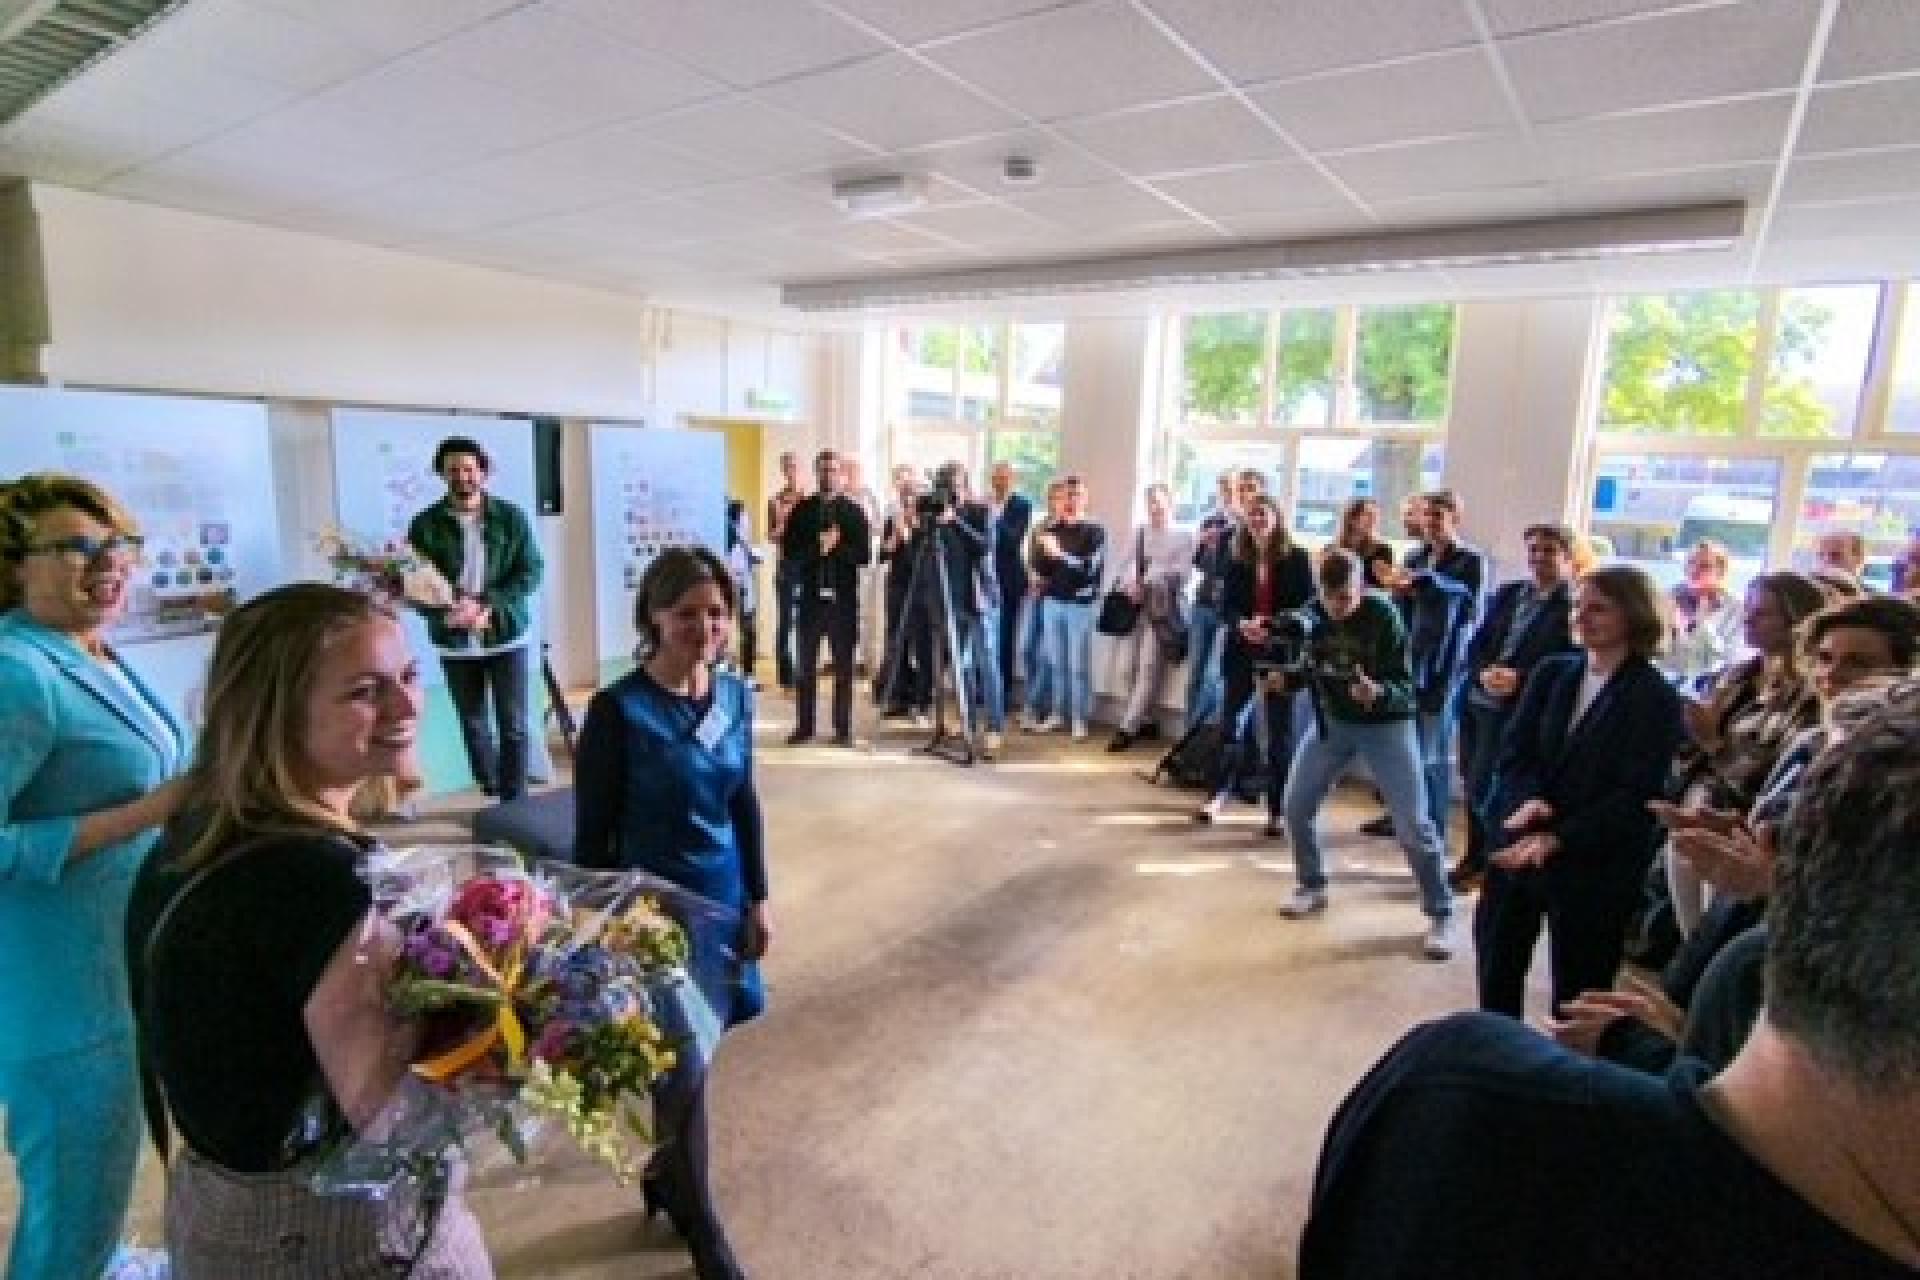 Tentoonstelling biobased bouwen voor de Nieuwe Veemarkt in Zwolle